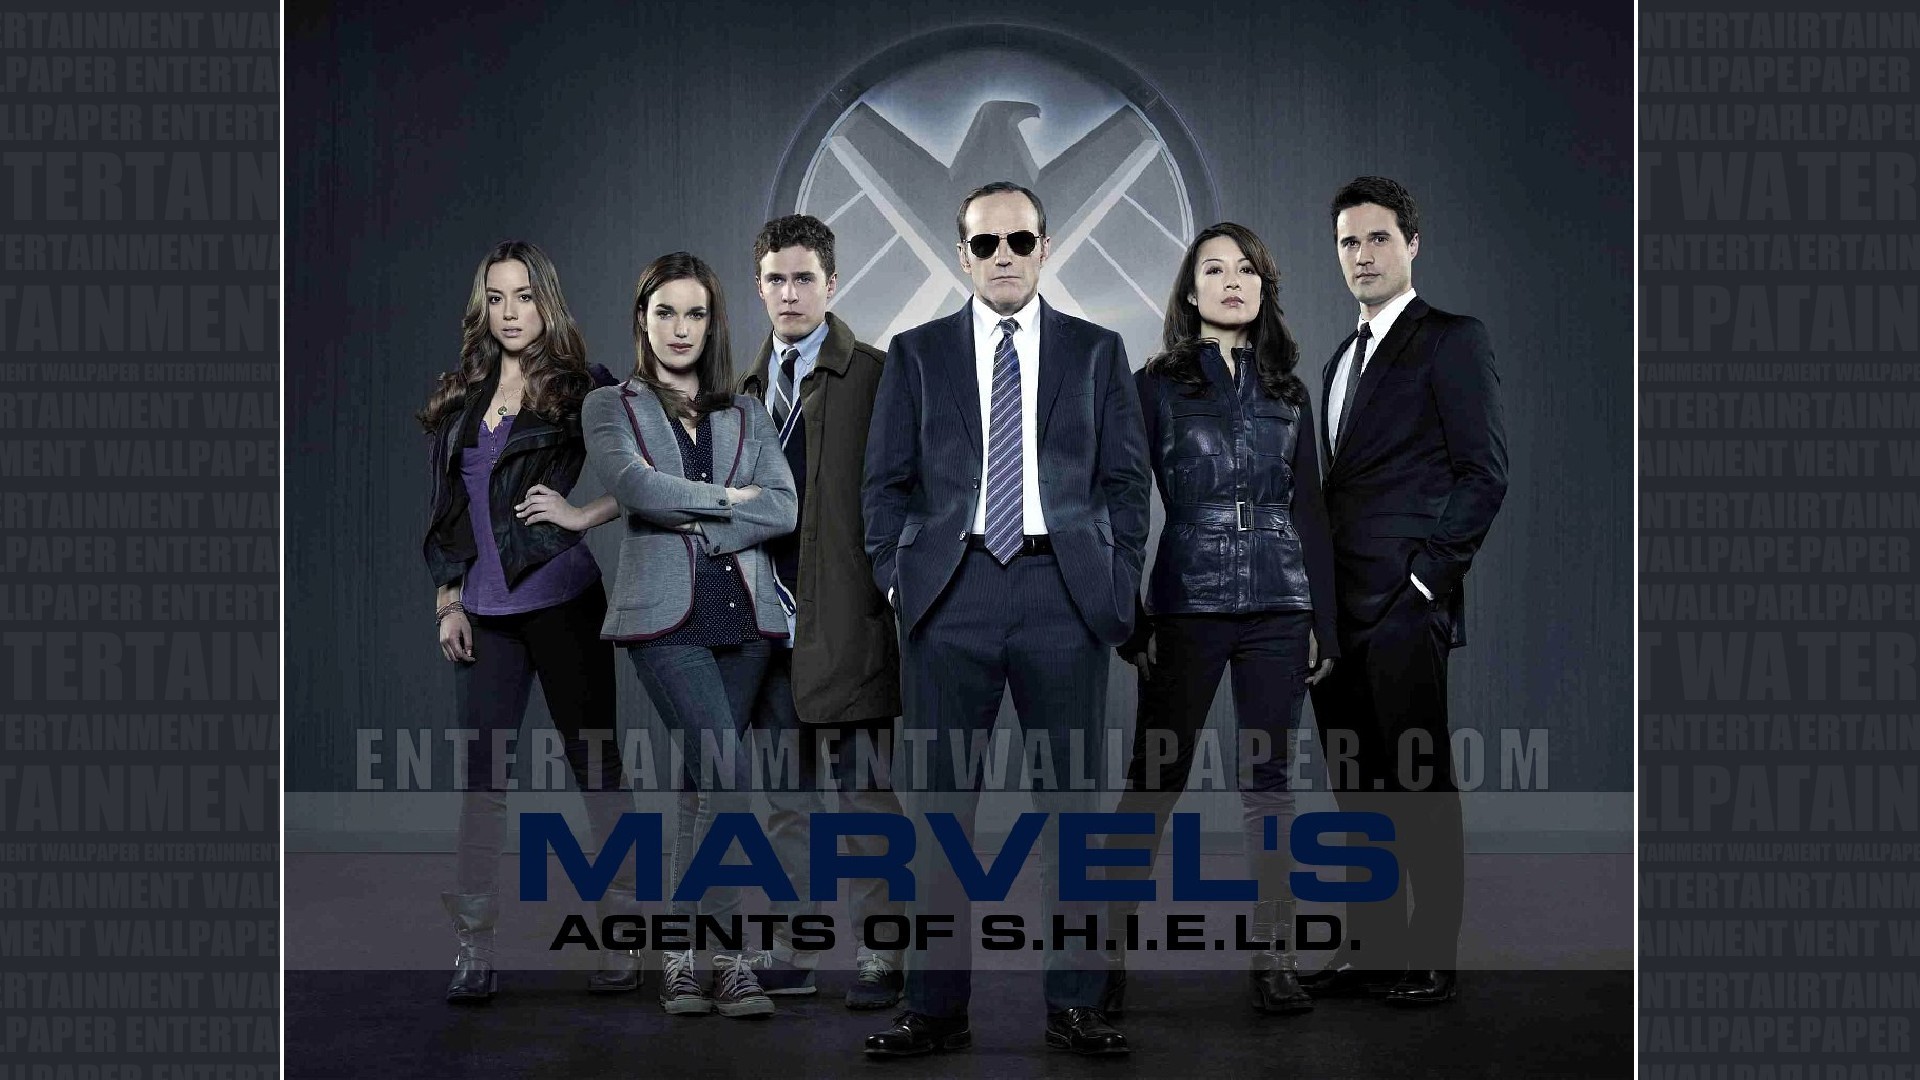 1920x1080 Marvel's Agents of S.H.I.E.L.D. Wallpaper - Original size, ...